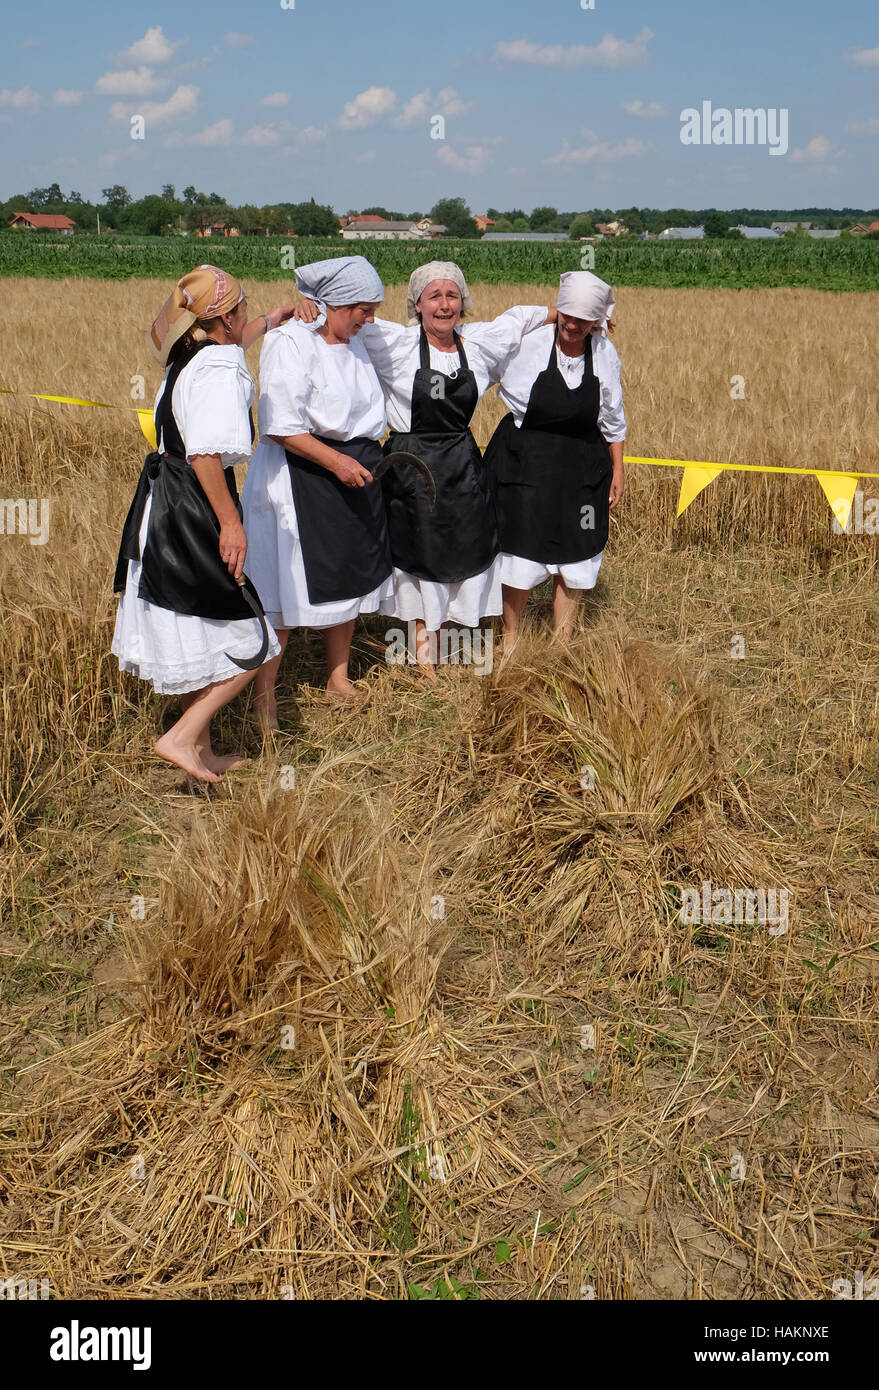 La récolte commence traditionnellement les villageois de l'assemblage, le chant et la danse et la bonne cuisine dans Nedelisce Croatie, Banque D'Images